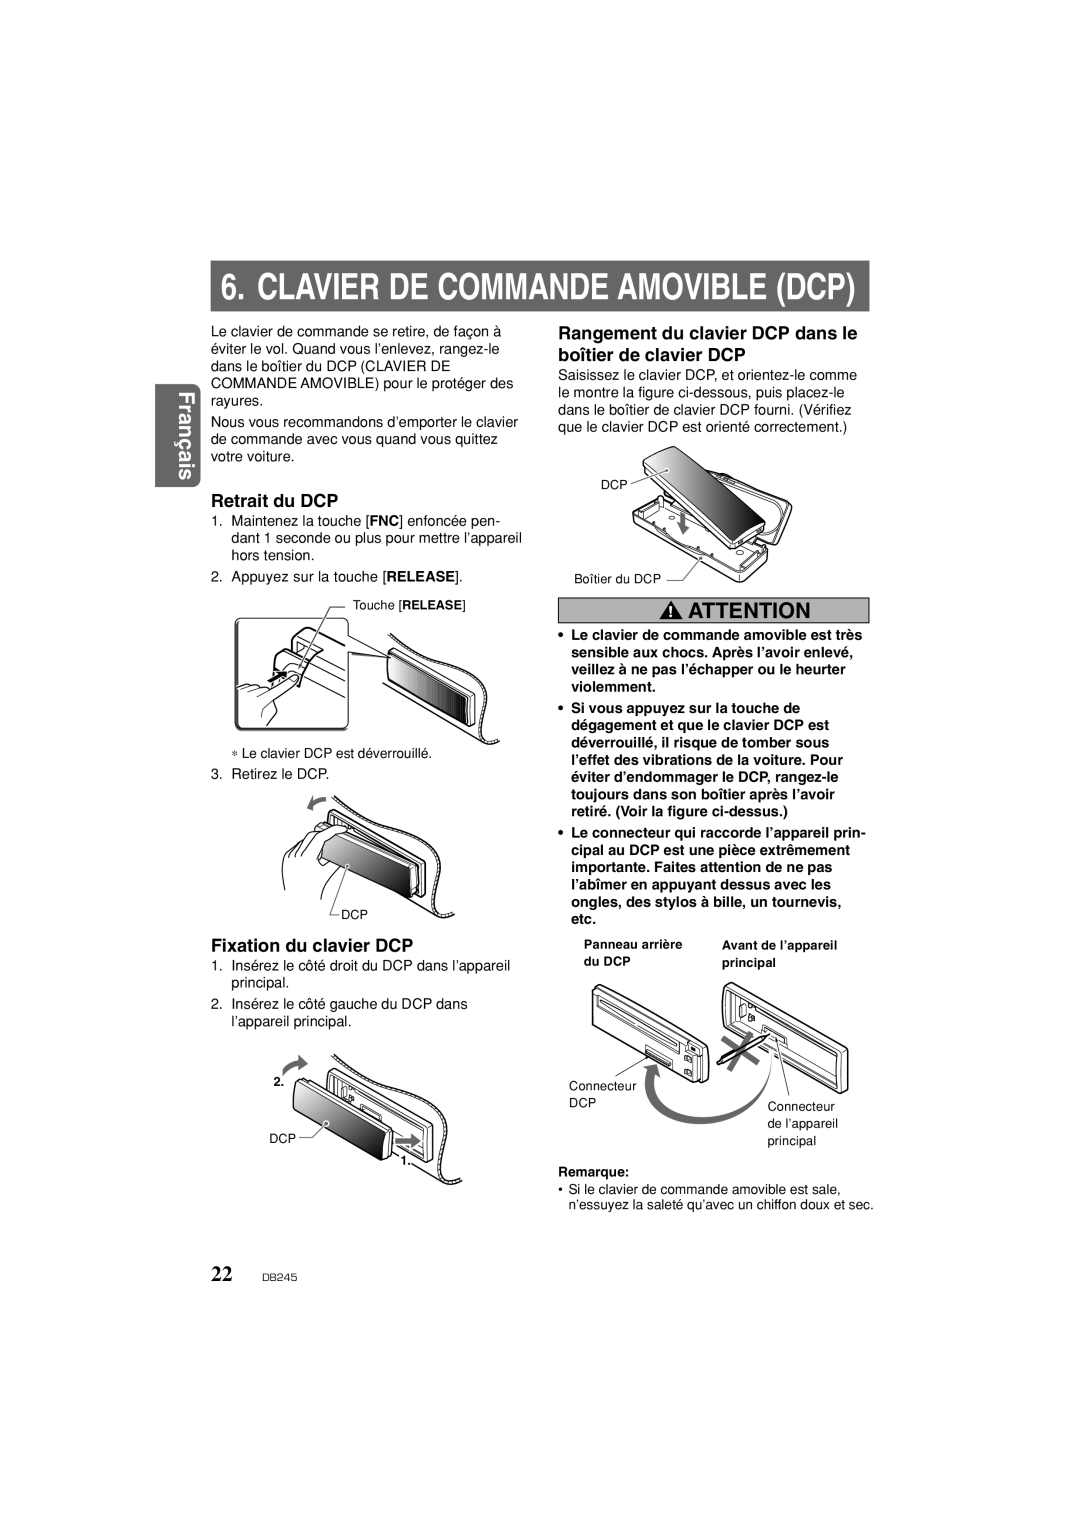 Clarion DB346MP owner manual Retrait du DCP, Fixation du clavier DCP, Clavier De Commande Amovible Dcp, Français 